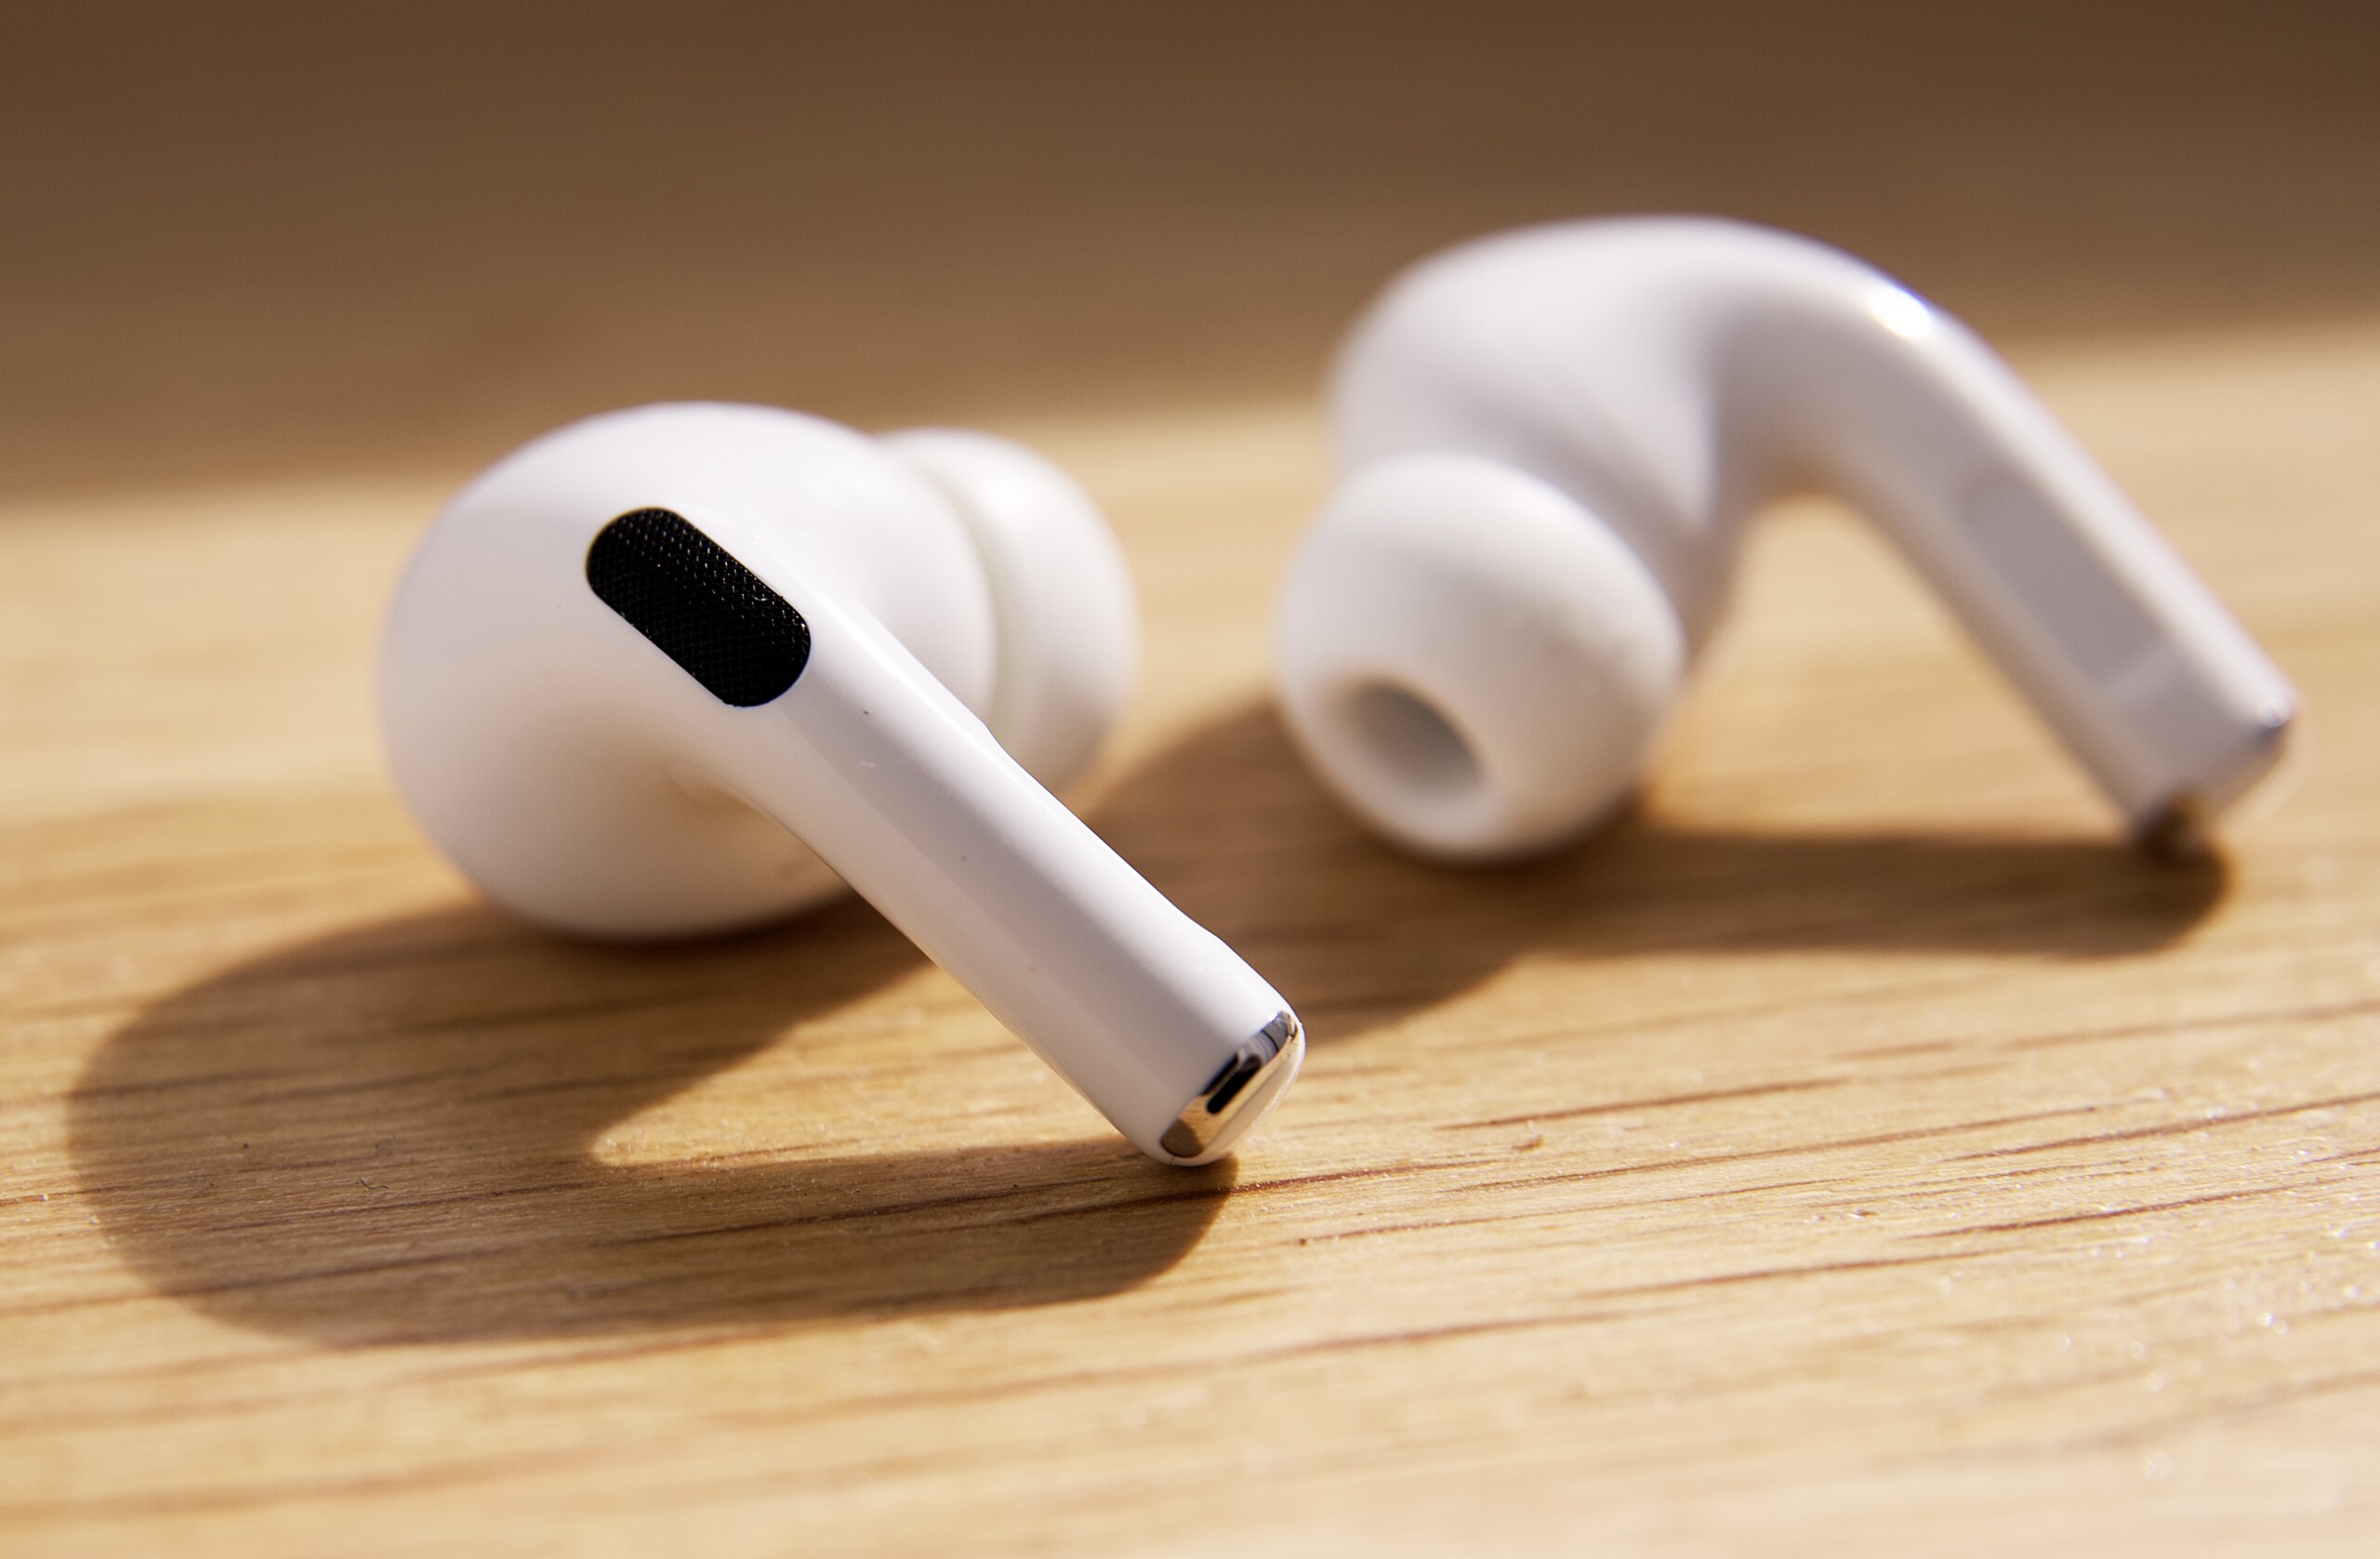 Ecouteurs sans fil Apple AirPods Pro 2 usb c –